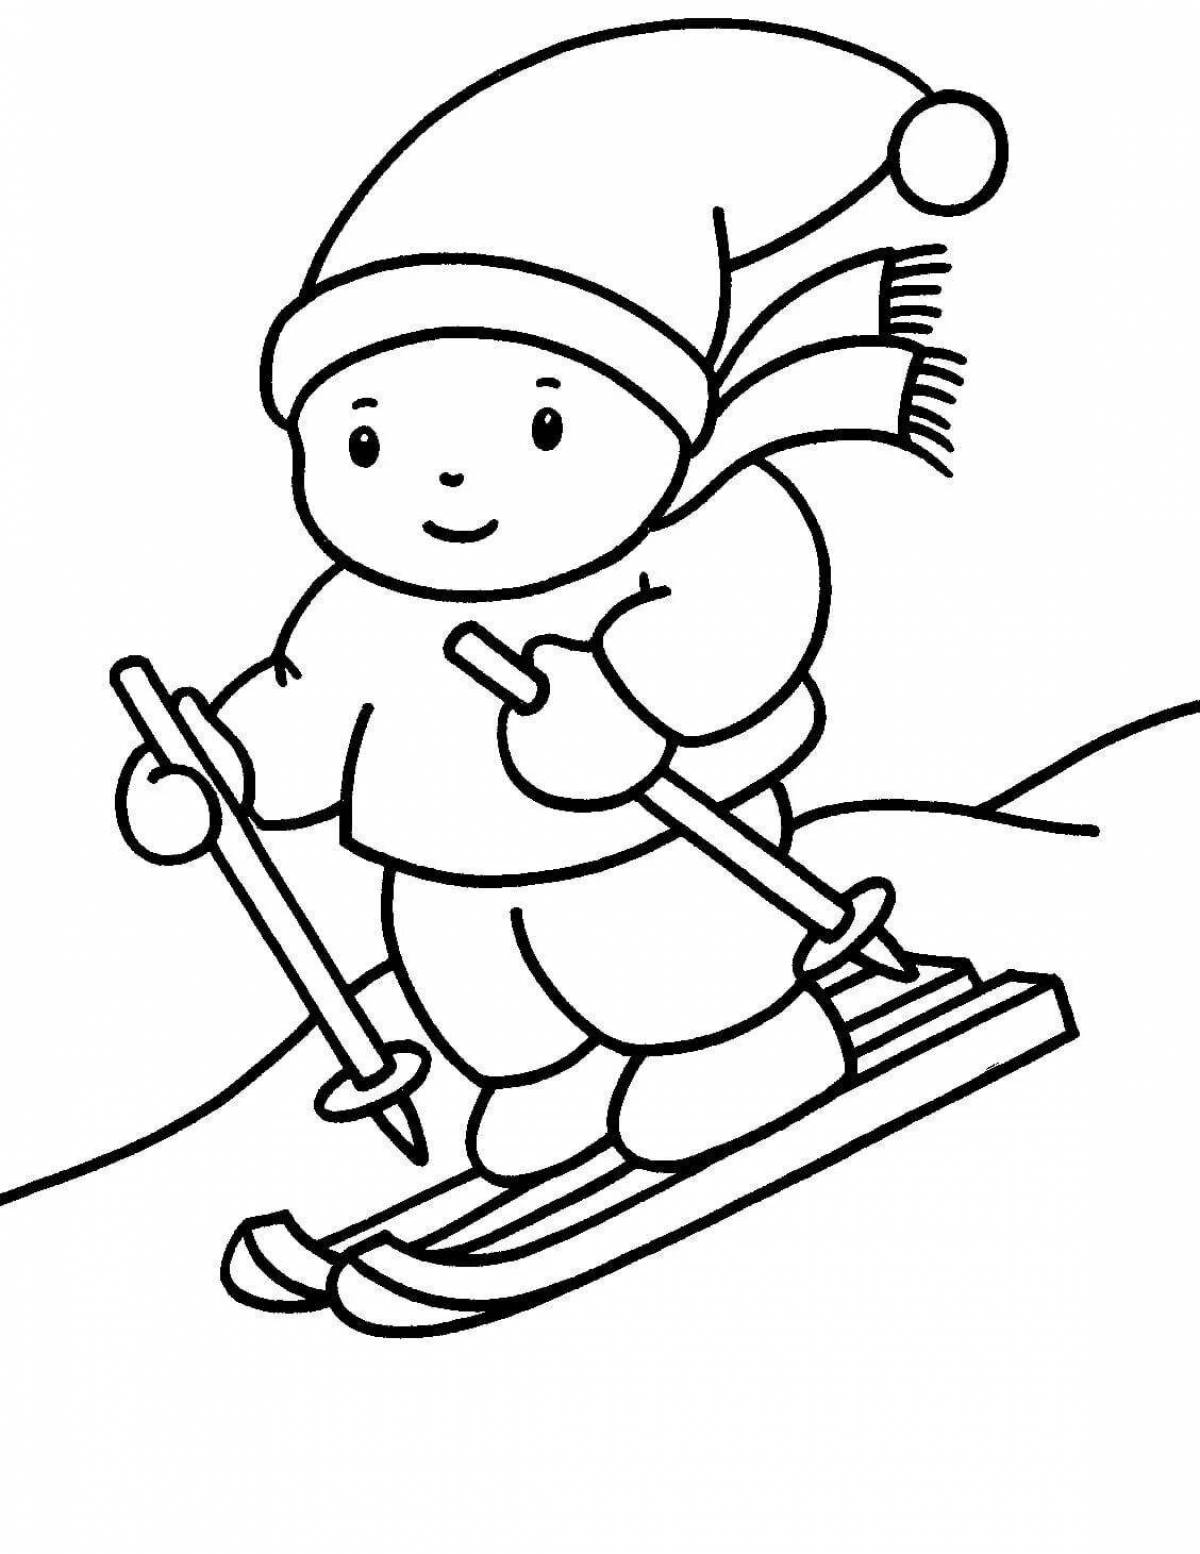 Смелые дети катаются на лыжах зимой